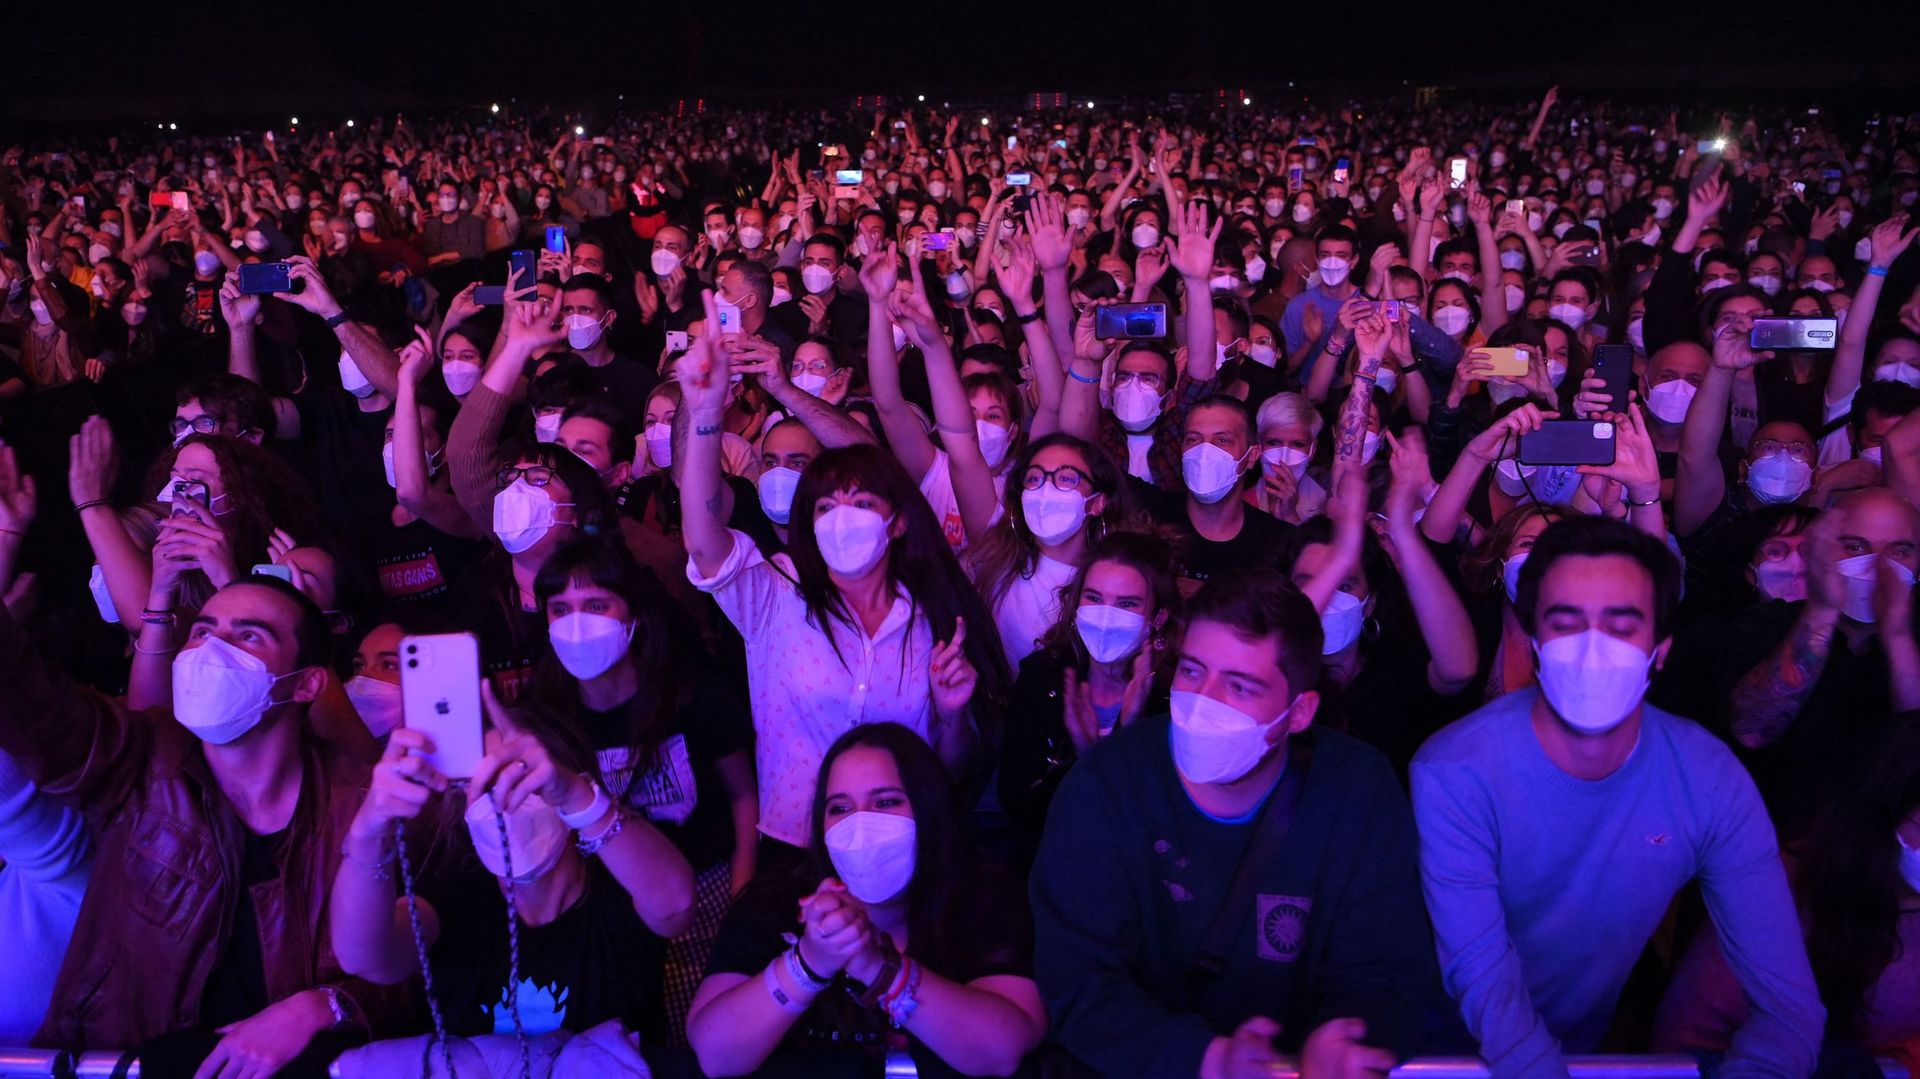 Un concert test à Barcelone a rassemblé 5000 personnes à Barcelone, à la condition de présenter un test négatif à l'entrée et porter un masque FFP2